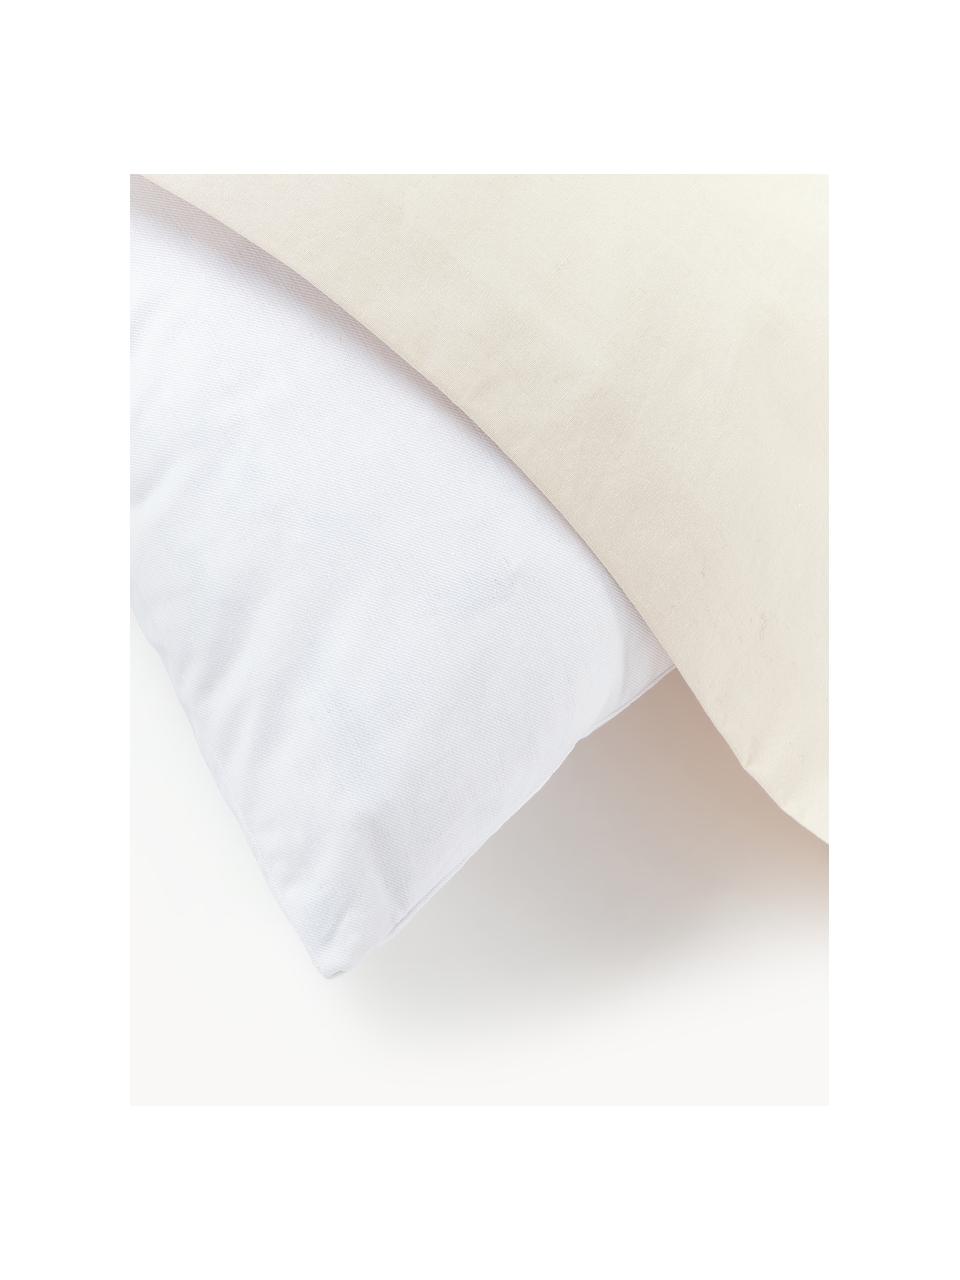 Výplň dekorativního polštáře Comfort, péřová výplň, různé velikosti, Bílá, Š 30 cm, D 70 cm